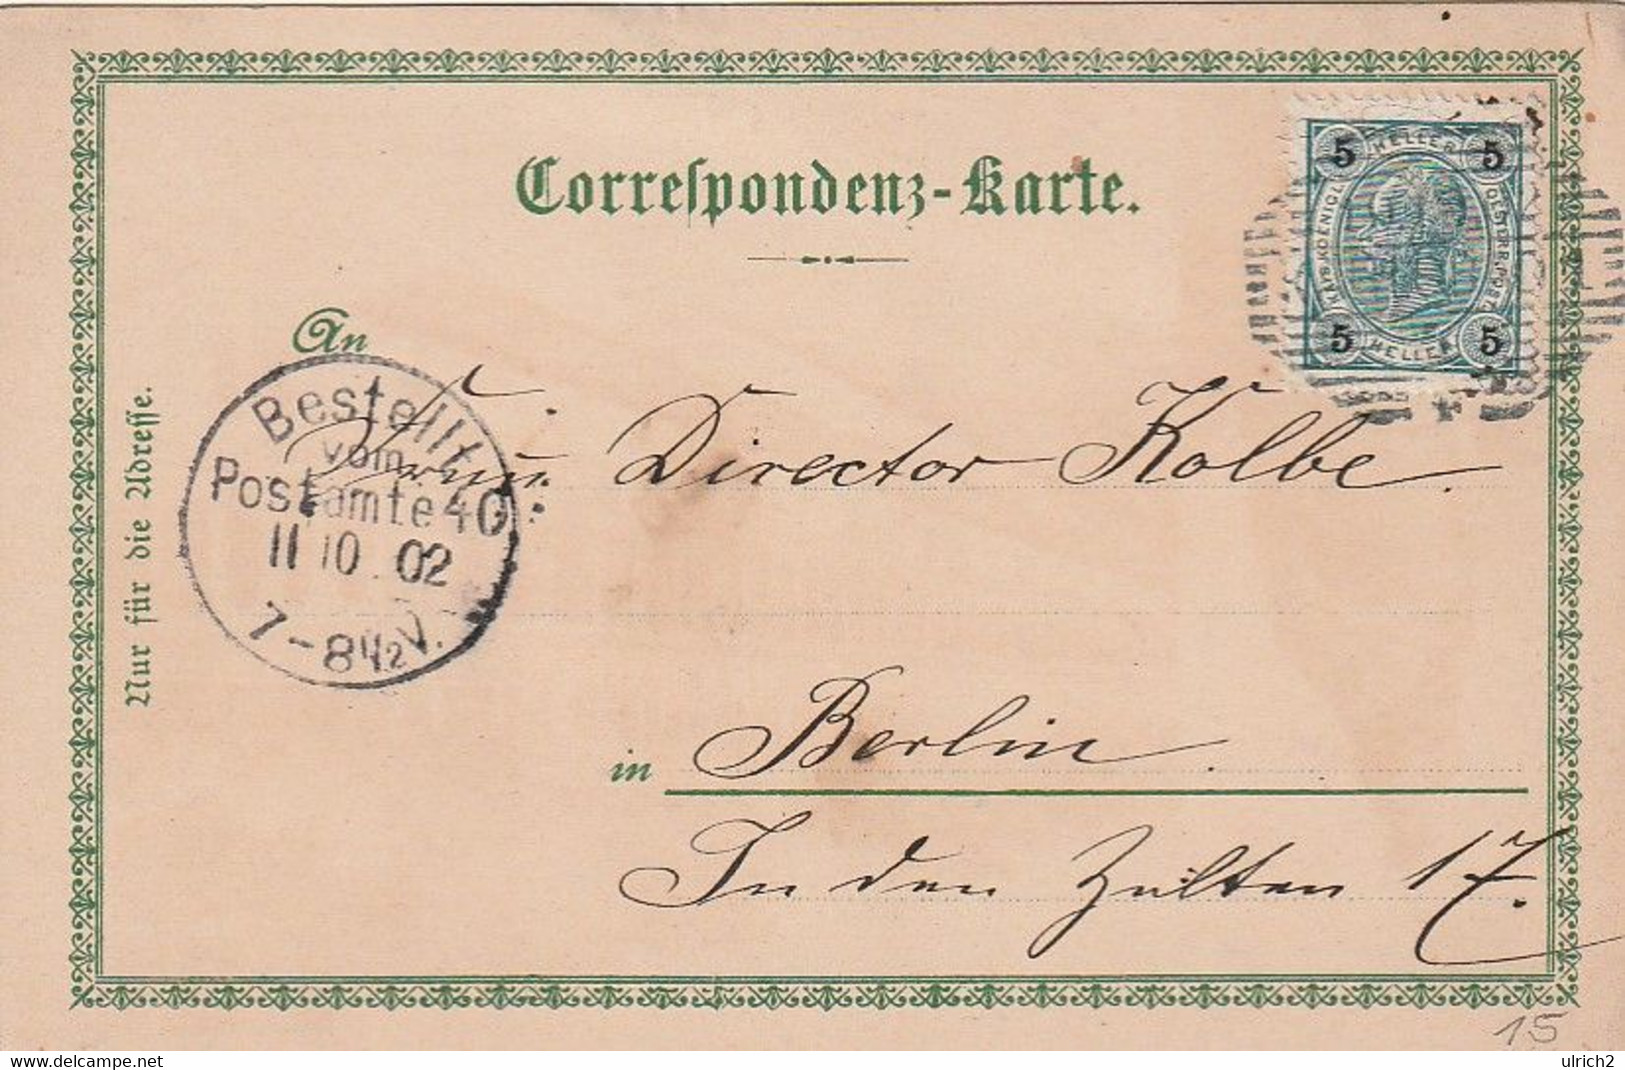 AK Gruss Aus Karlsbad - Mühlbrunnencolonade Hirschensprung - 1902 (59166) - Tschechische Republik